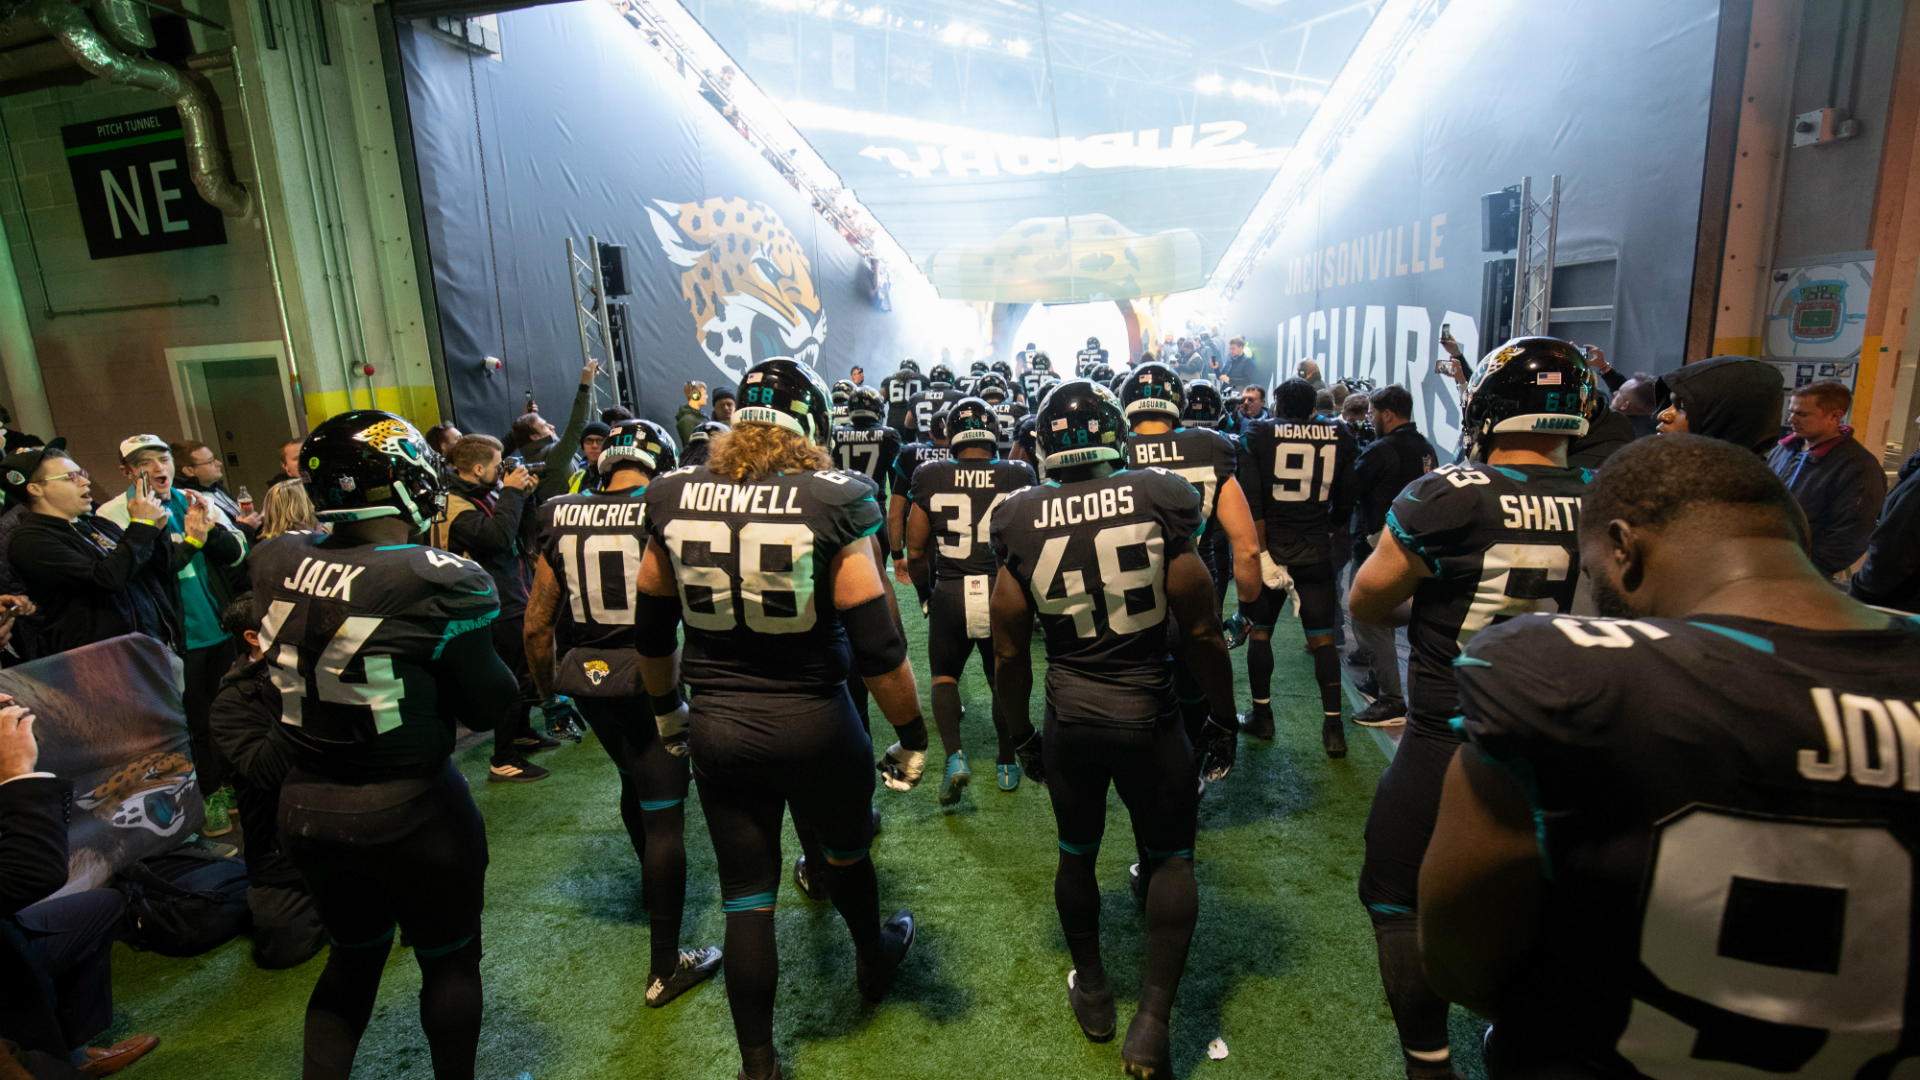 Команда Jacksonville Jaguars выходит через туннель на поле. Изображение любезно предоставлено NFL UK.